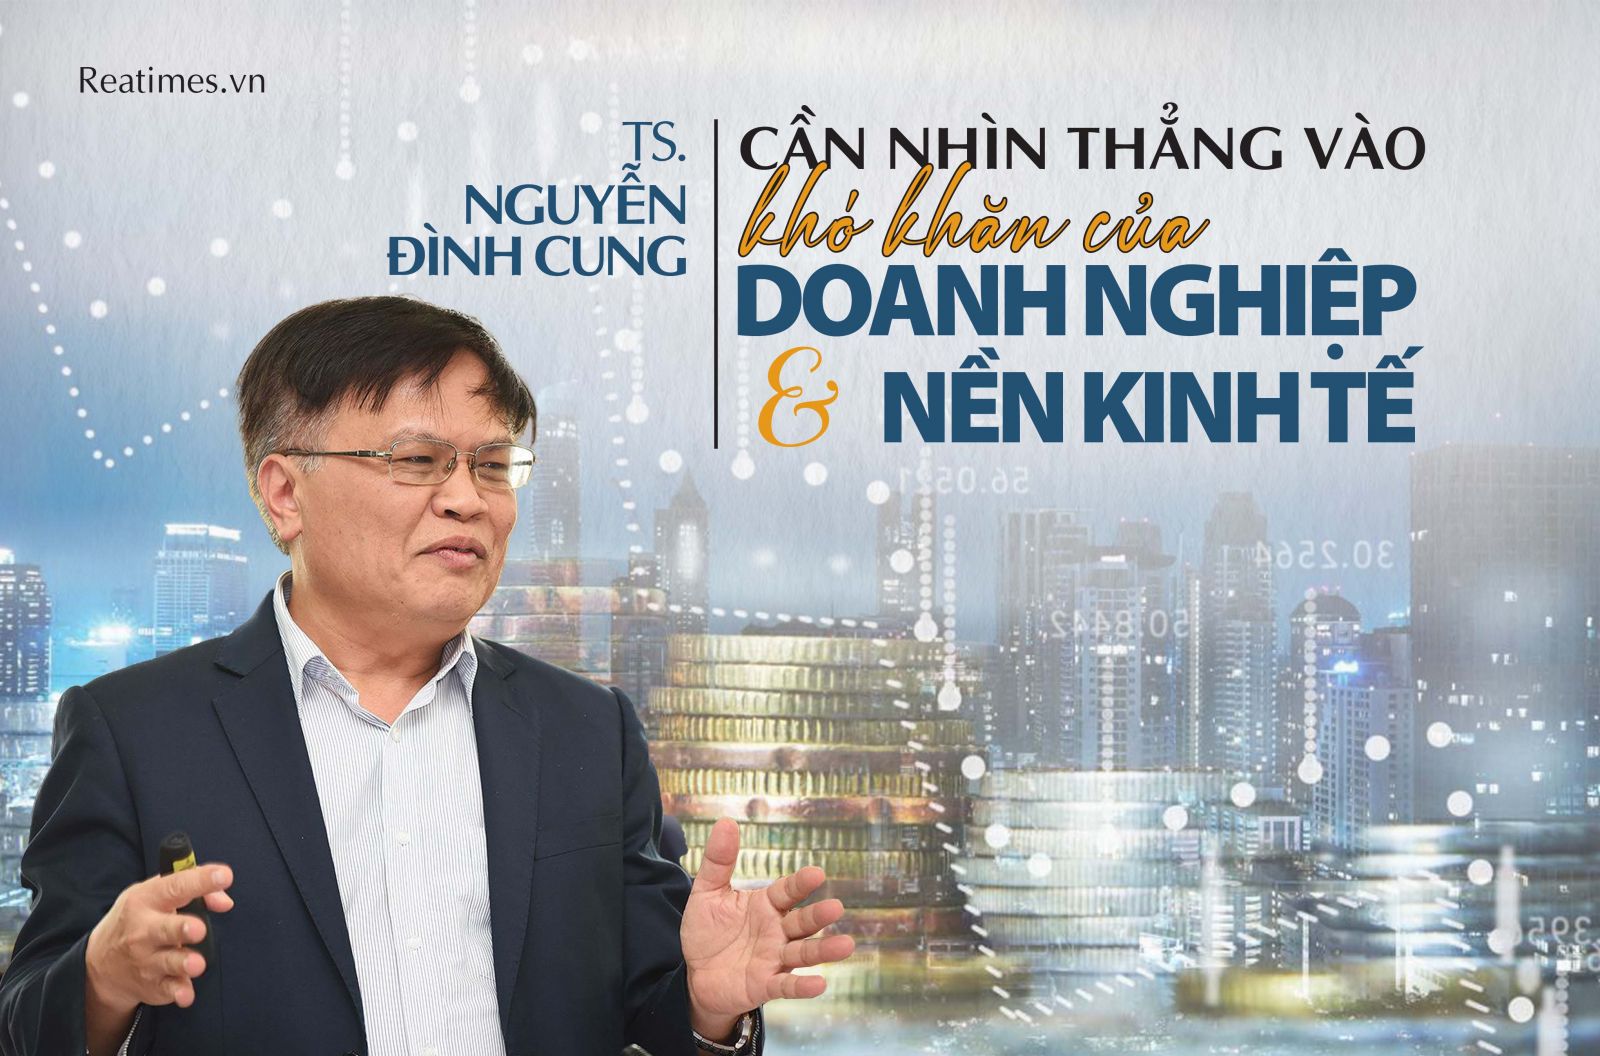 TS. Nguyễn Đình Cung: Cần nhìn thẳng vào khó khăn của doanh nghiệp và nền kinh tế